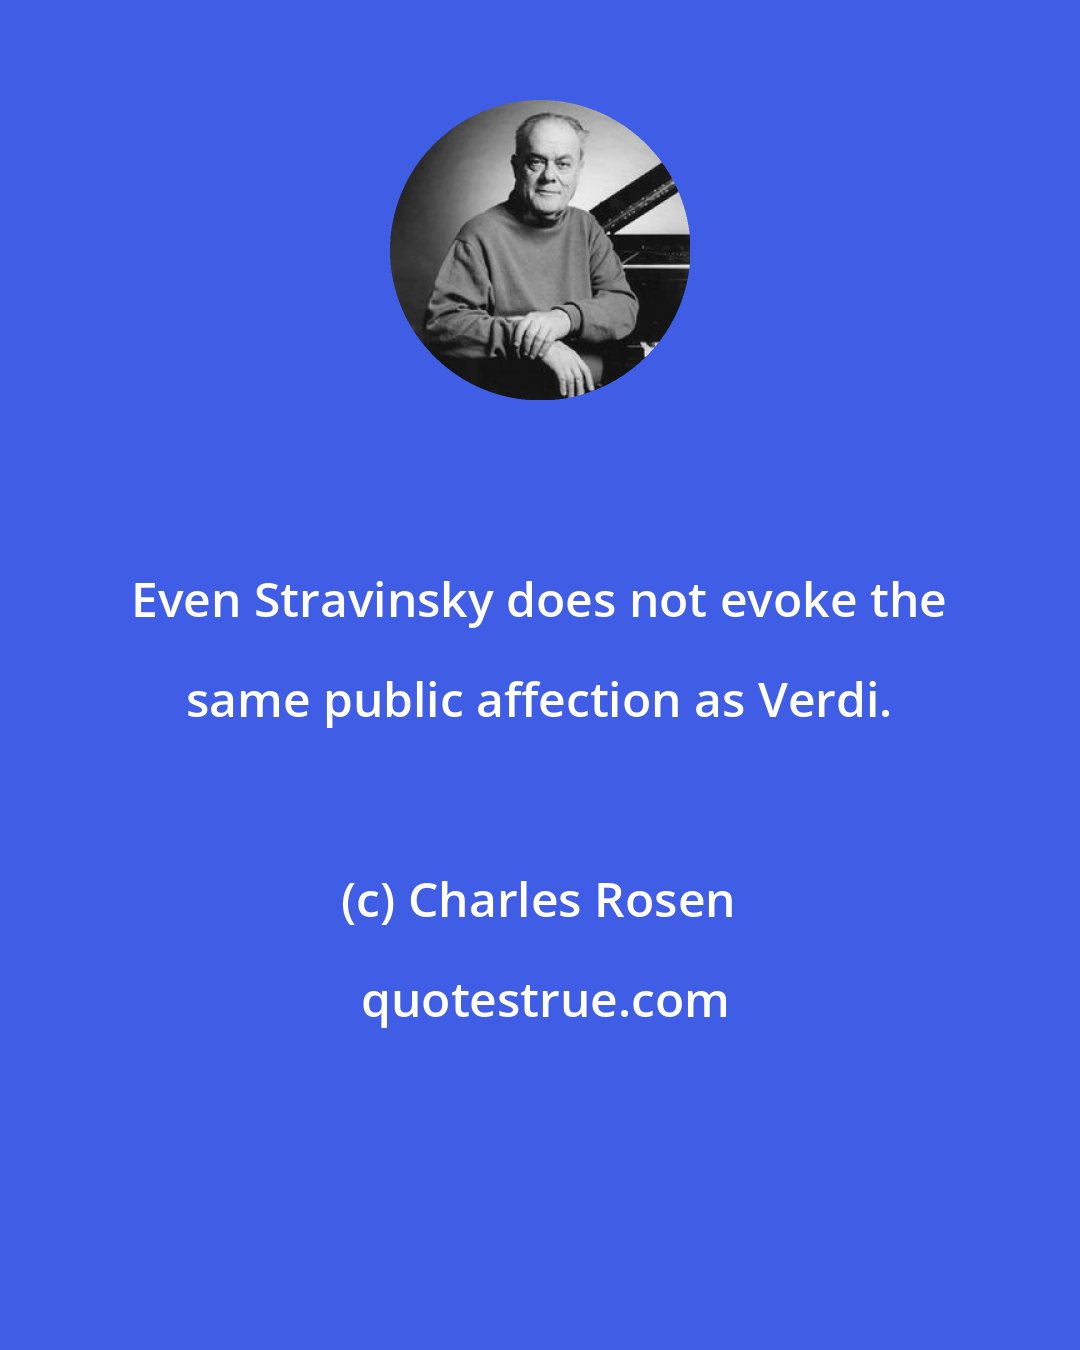 Charles Rosen: Even Stravinsky does not evoke the same public affection as Verdi.